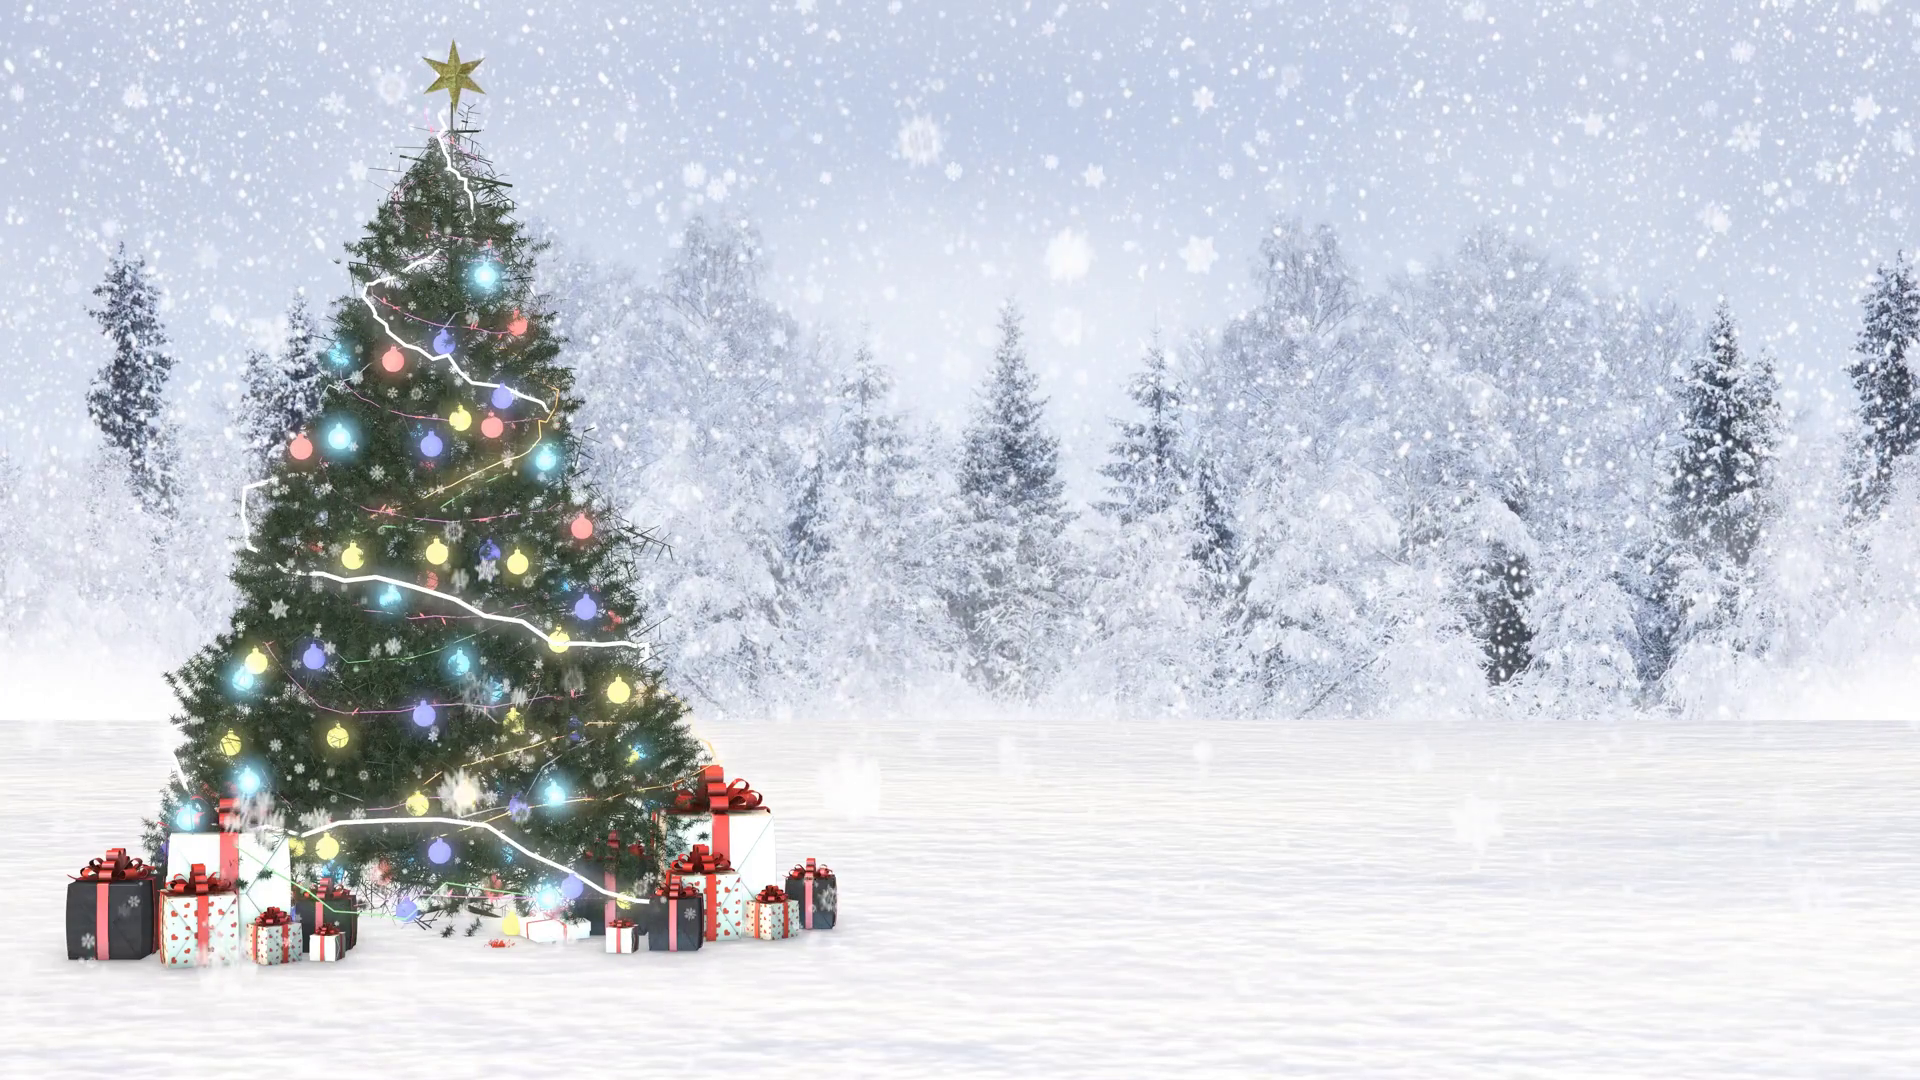 weihnachten schneetapete,weihnachtsbaum,schnee,winter,baum,weihnachtsdekoration